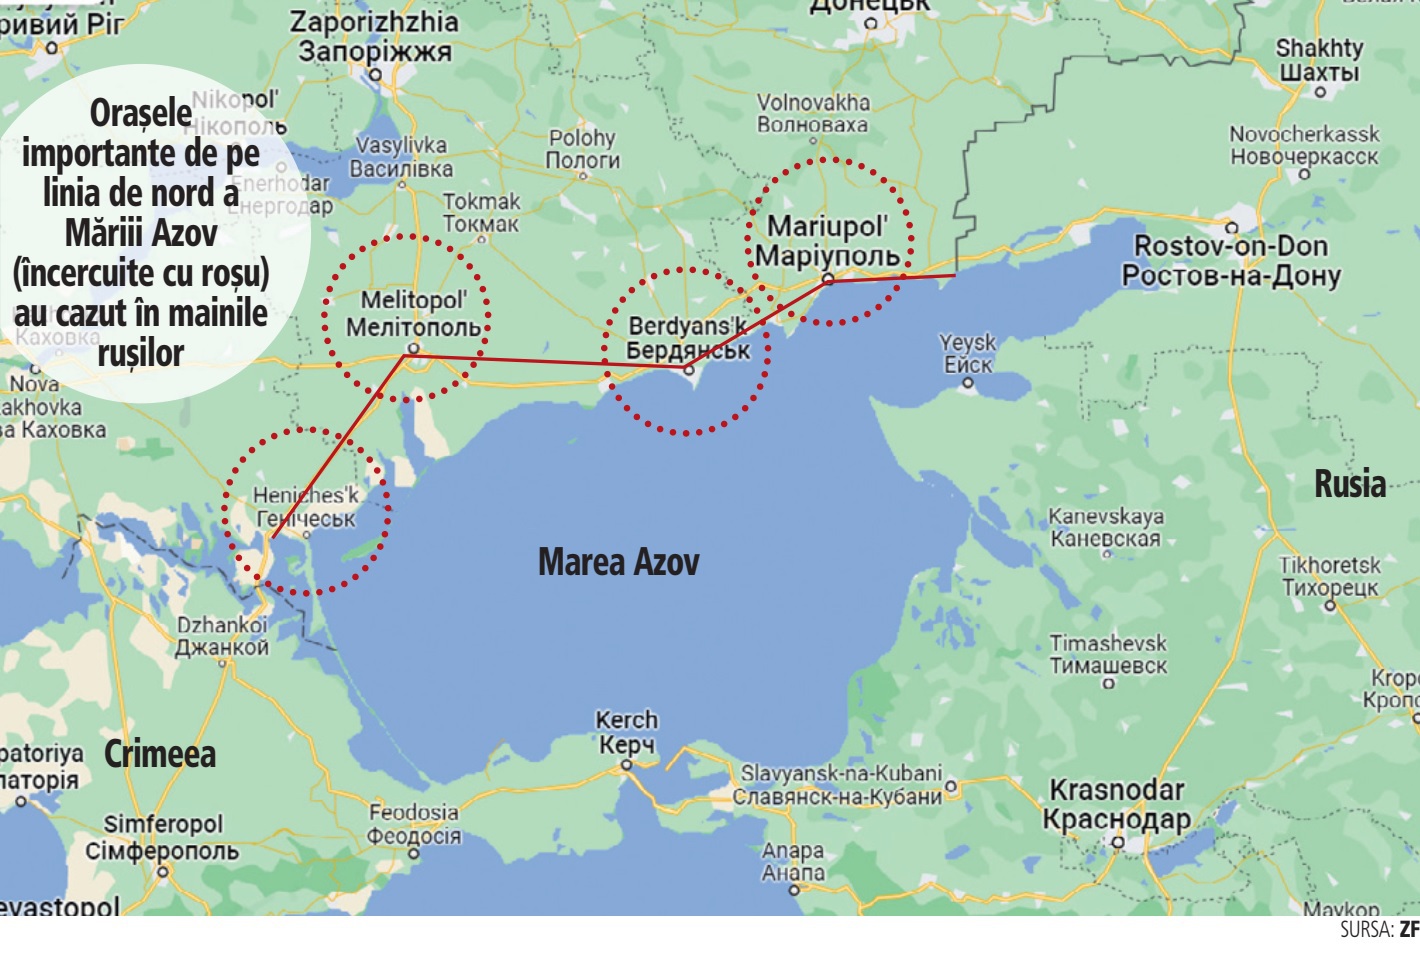 Mariupolul a căzut. Cu cât este Rusia mai aproape de obiectivul de a tăia accesul Ucrainei la Marea Azov? Aşa cum arată harta, Rusia a ocupat în acest moment toate oraşele importante din ruta terestră dintre Crimeea şi Rusia, însă nu este clar dacă ruşii controlează tot malul nordic al Mării Azov